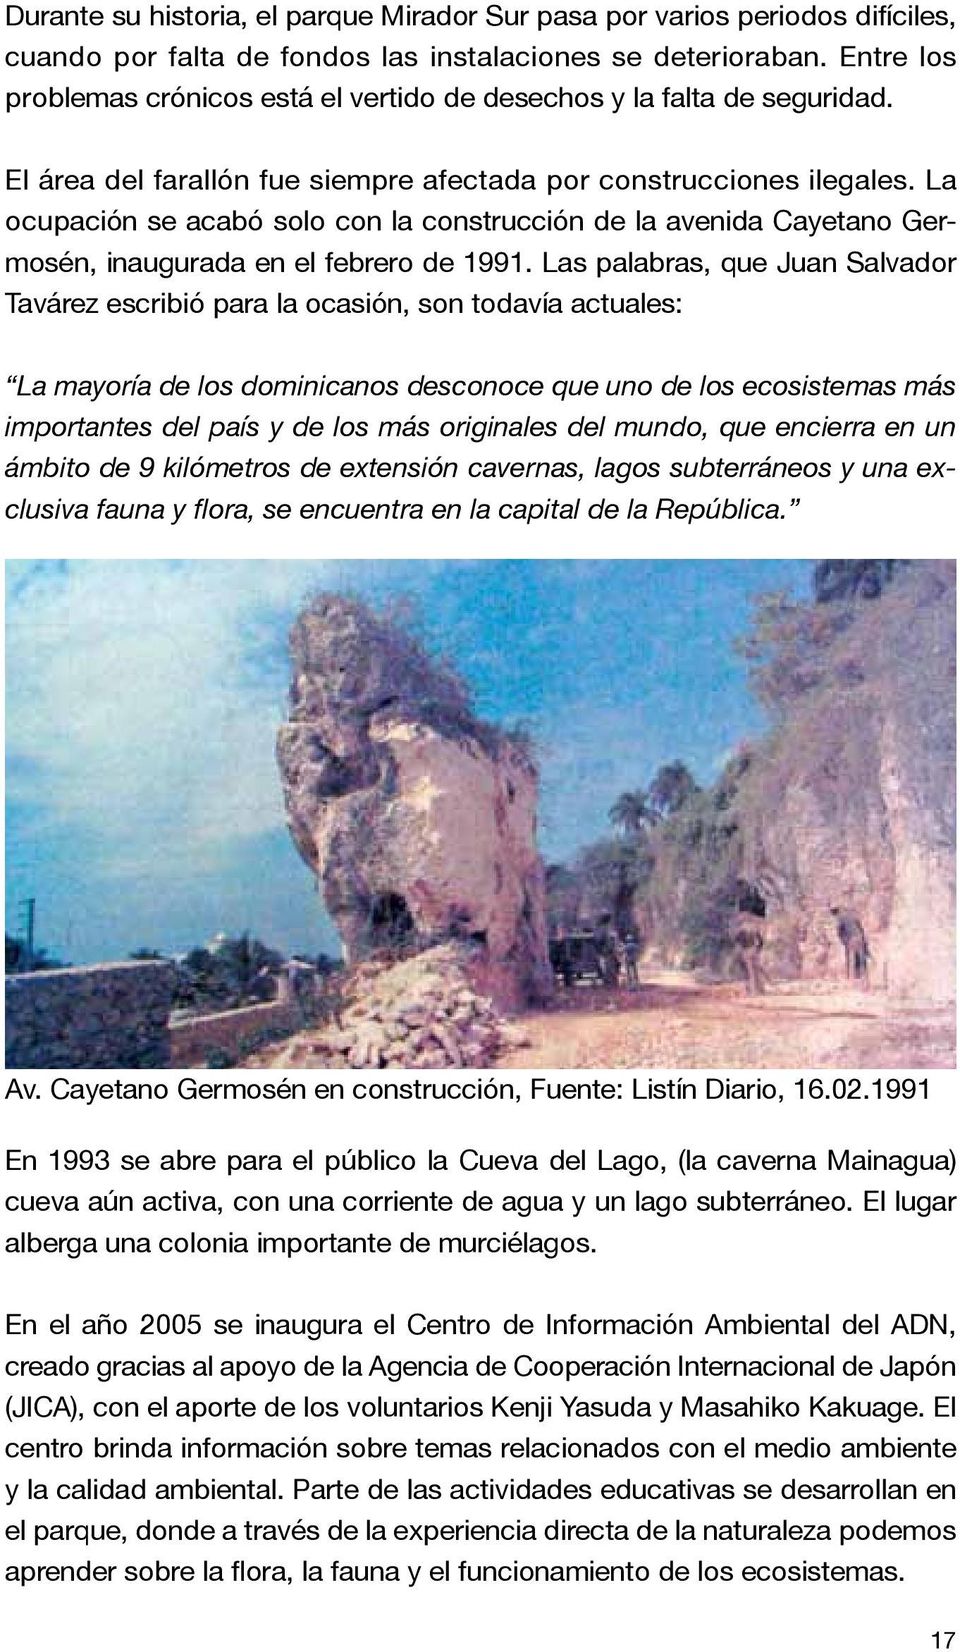 La ocupación se acabó solo con la construcción de la avenida Cayetano Germosén, inaugurada en el febrero de 1991.